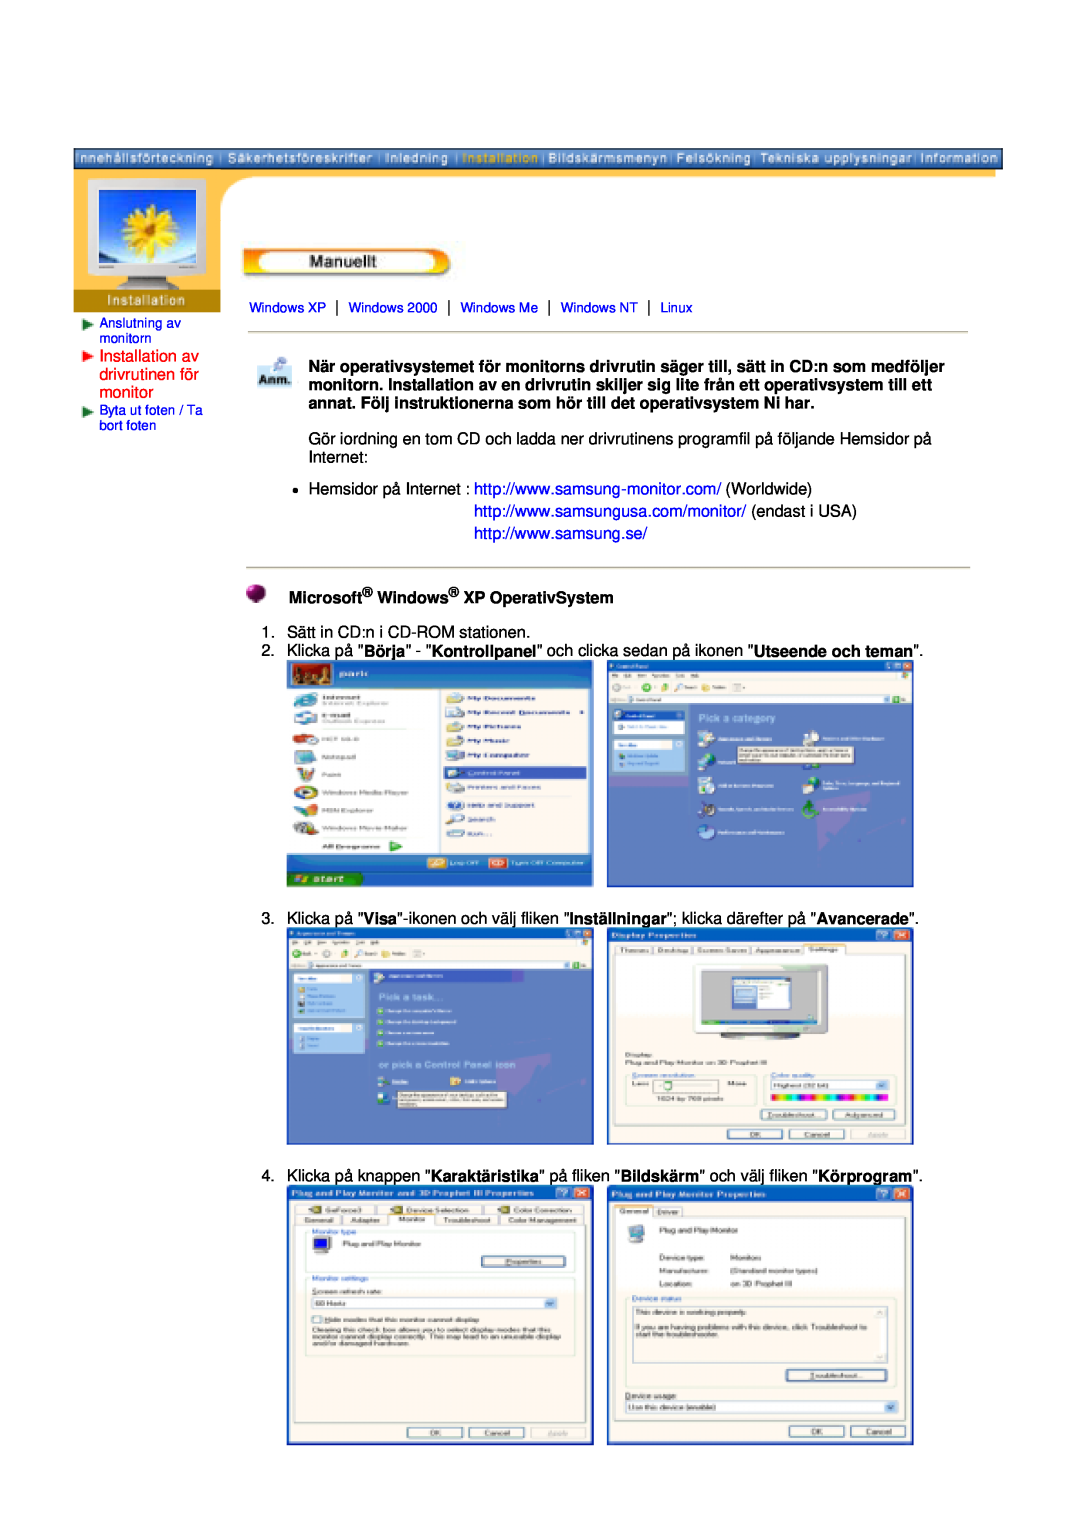 Samsung GY19VSSS/EDC, GY15VSSS/EDC manual Installation av drivrutinen för monitor, Microsoft Windows XP OperativSystem 